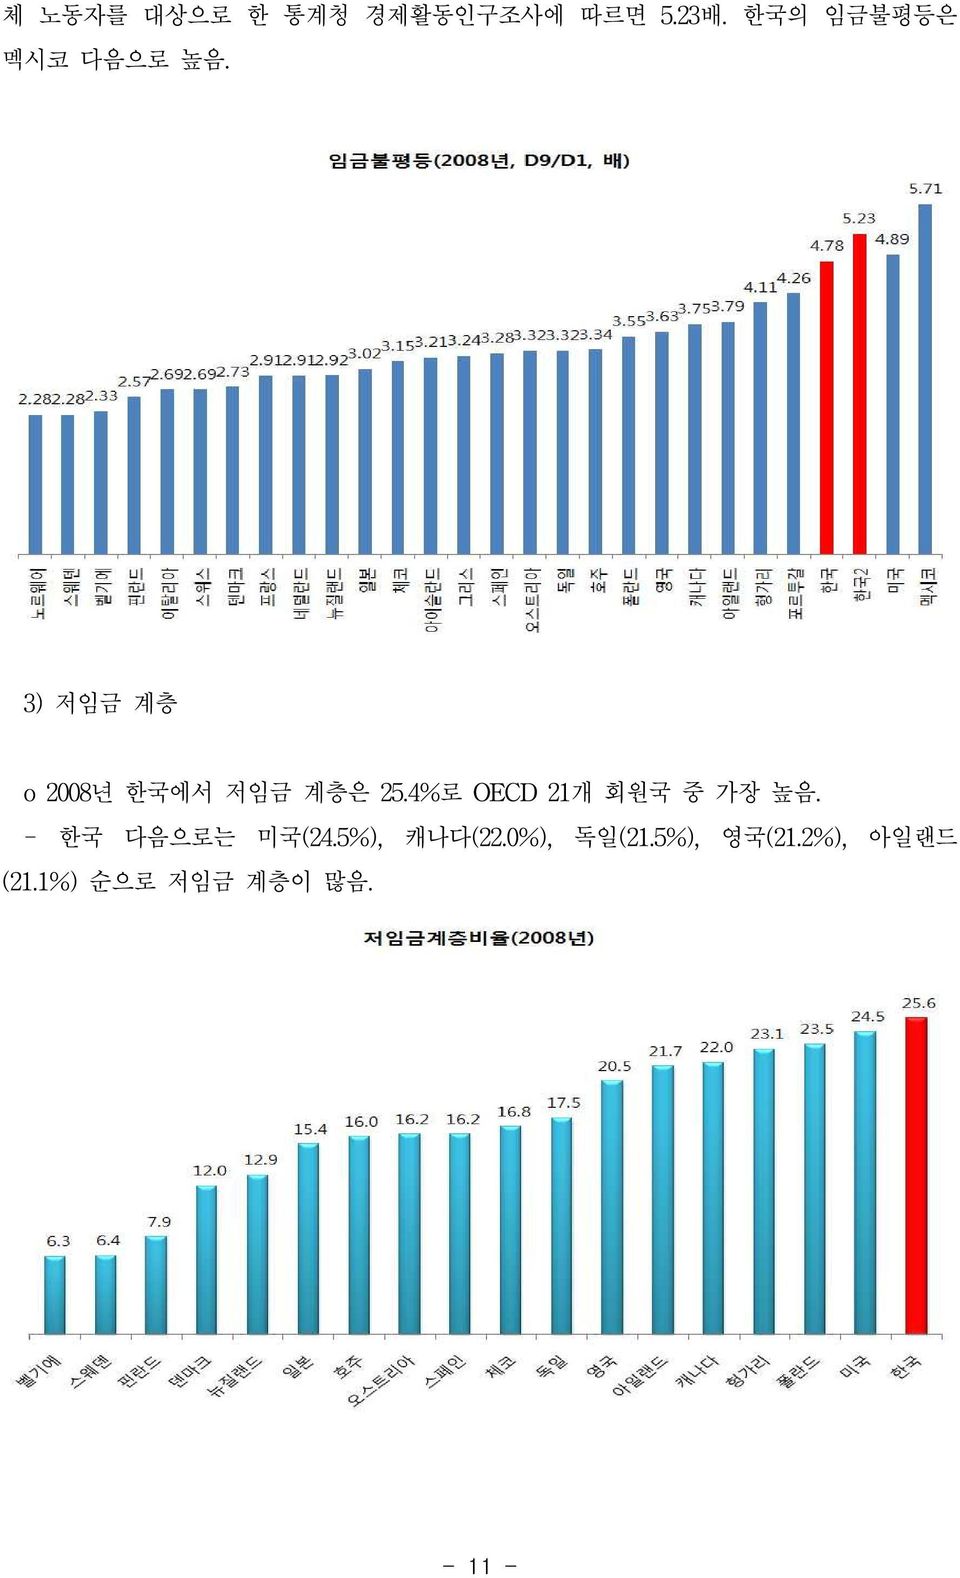 3) 저임금 계층 o 2008년 한국에서 저임금 계층은 25.